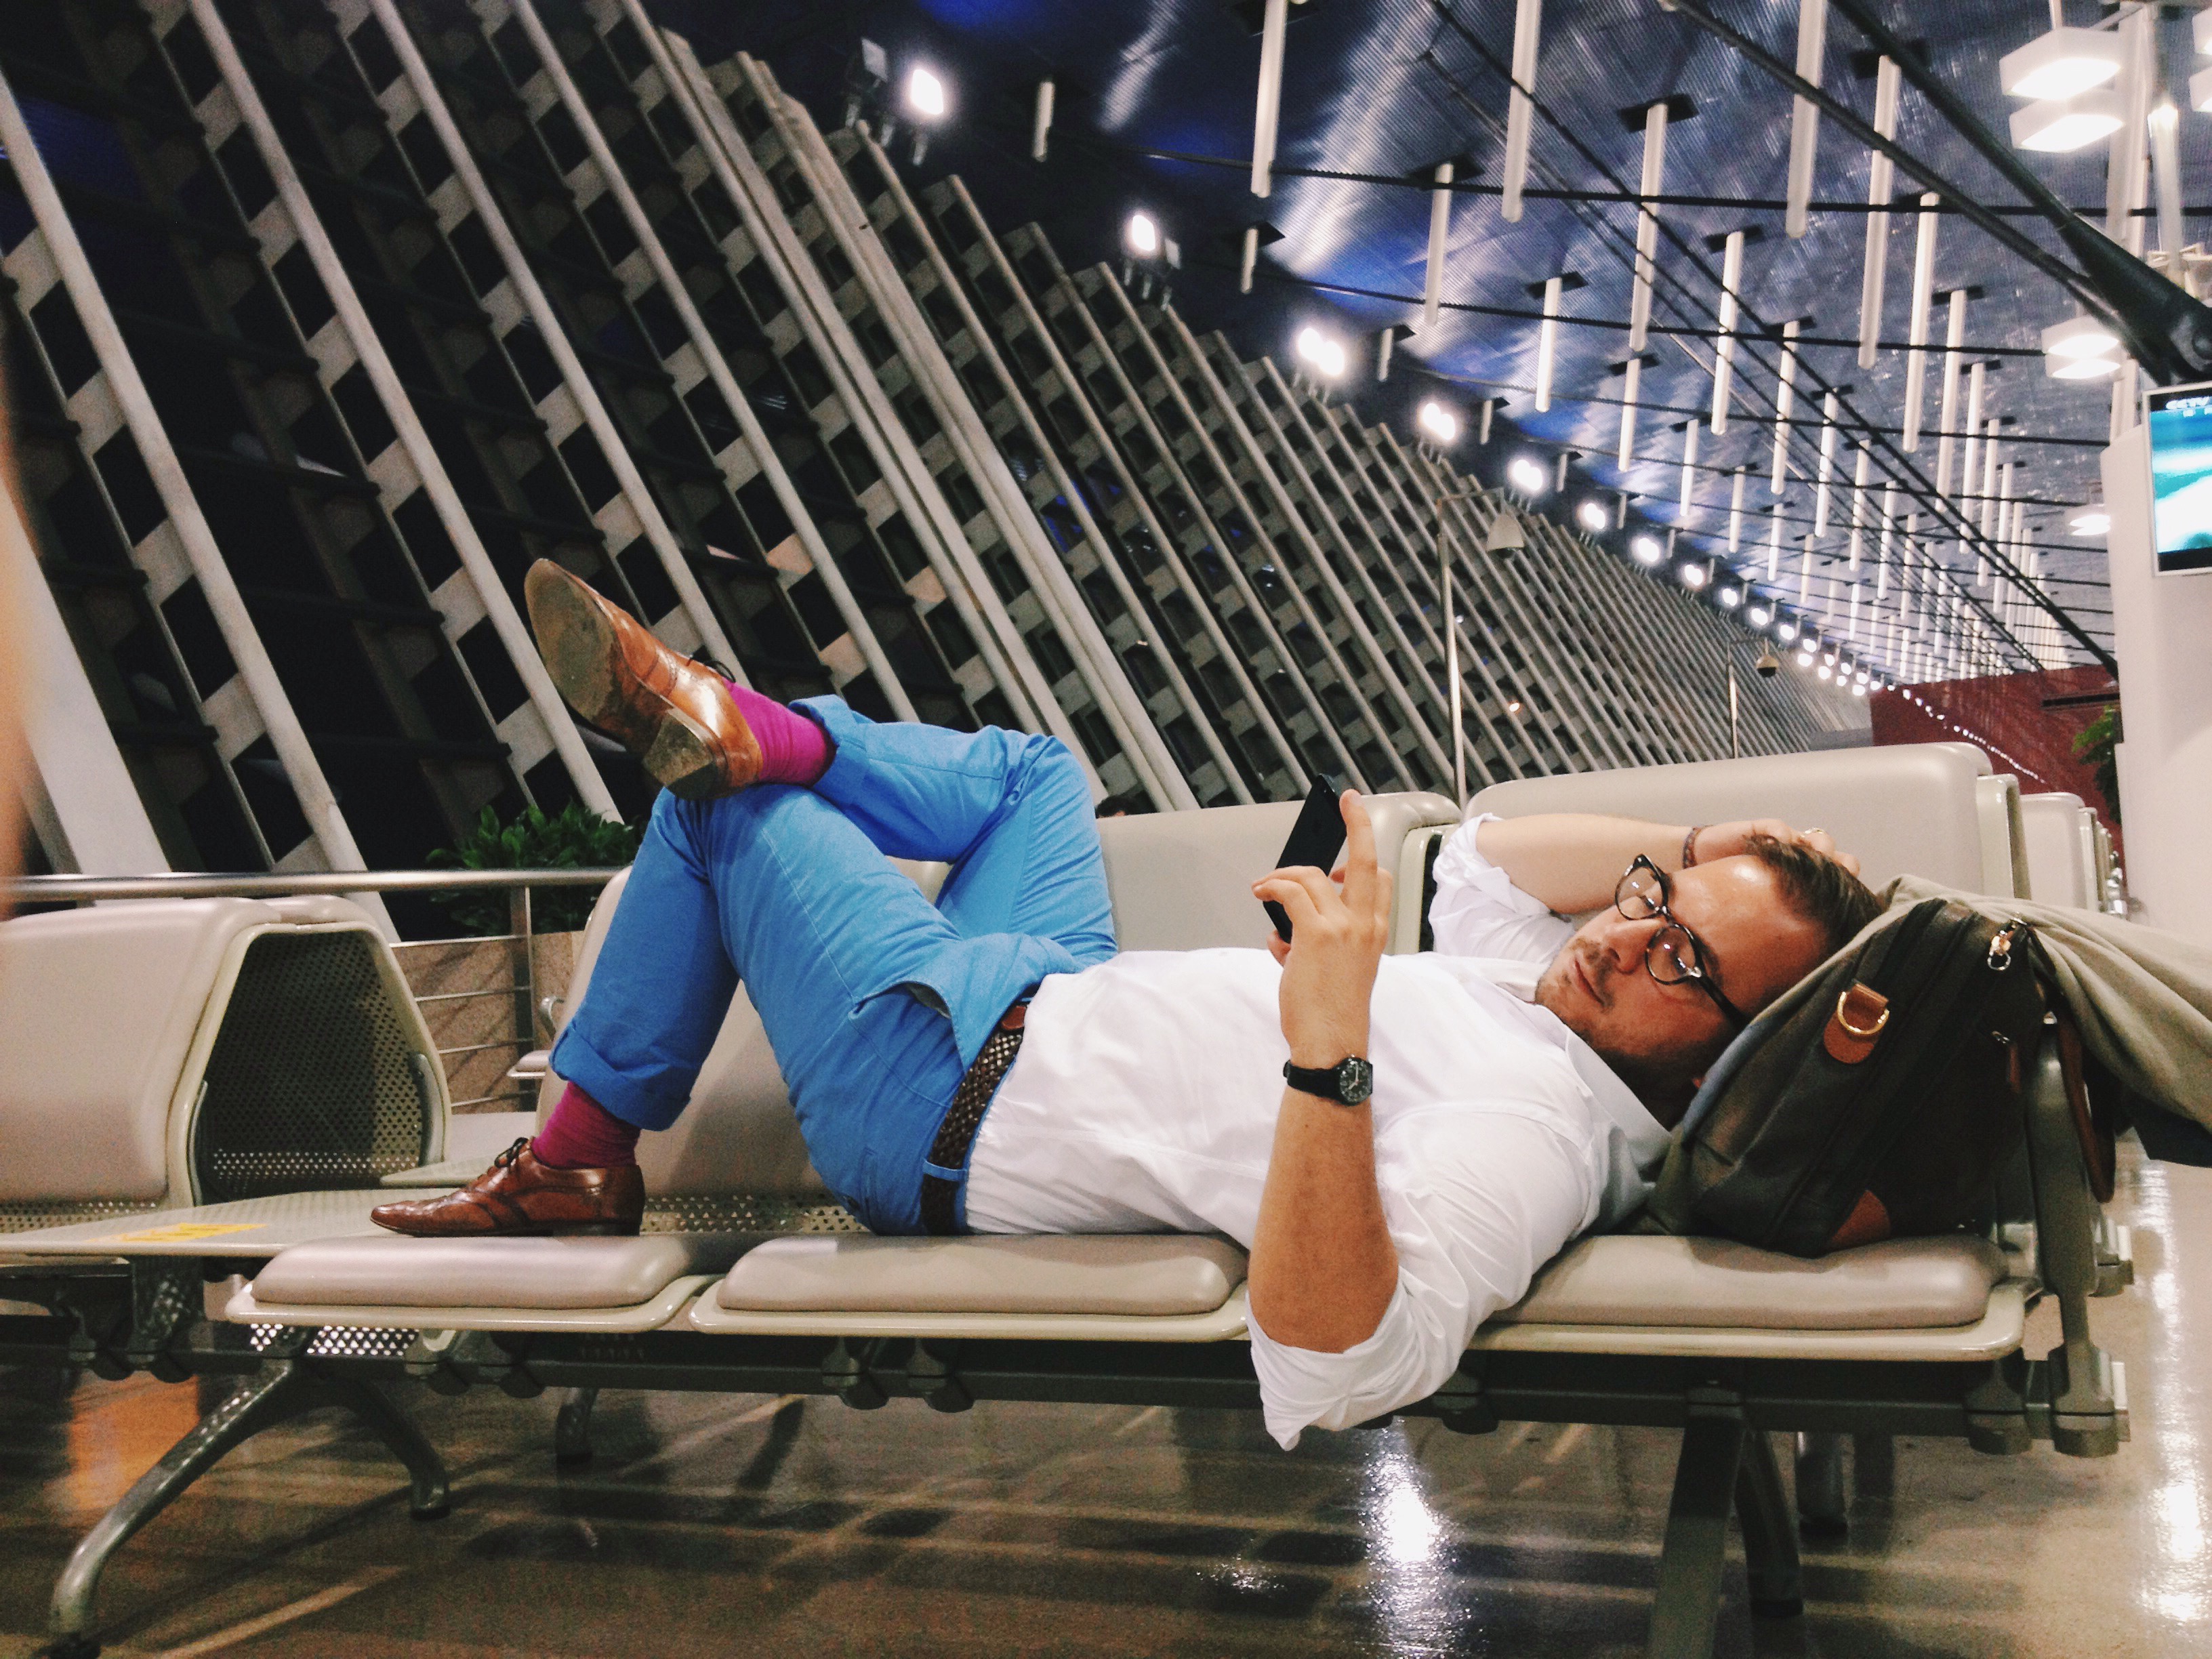 Moška oseba v beli majici in modrih hlačah, leži na sedežih na letališču in čaka na let, v ozadju pa se vidi konstrukcija prostora. 